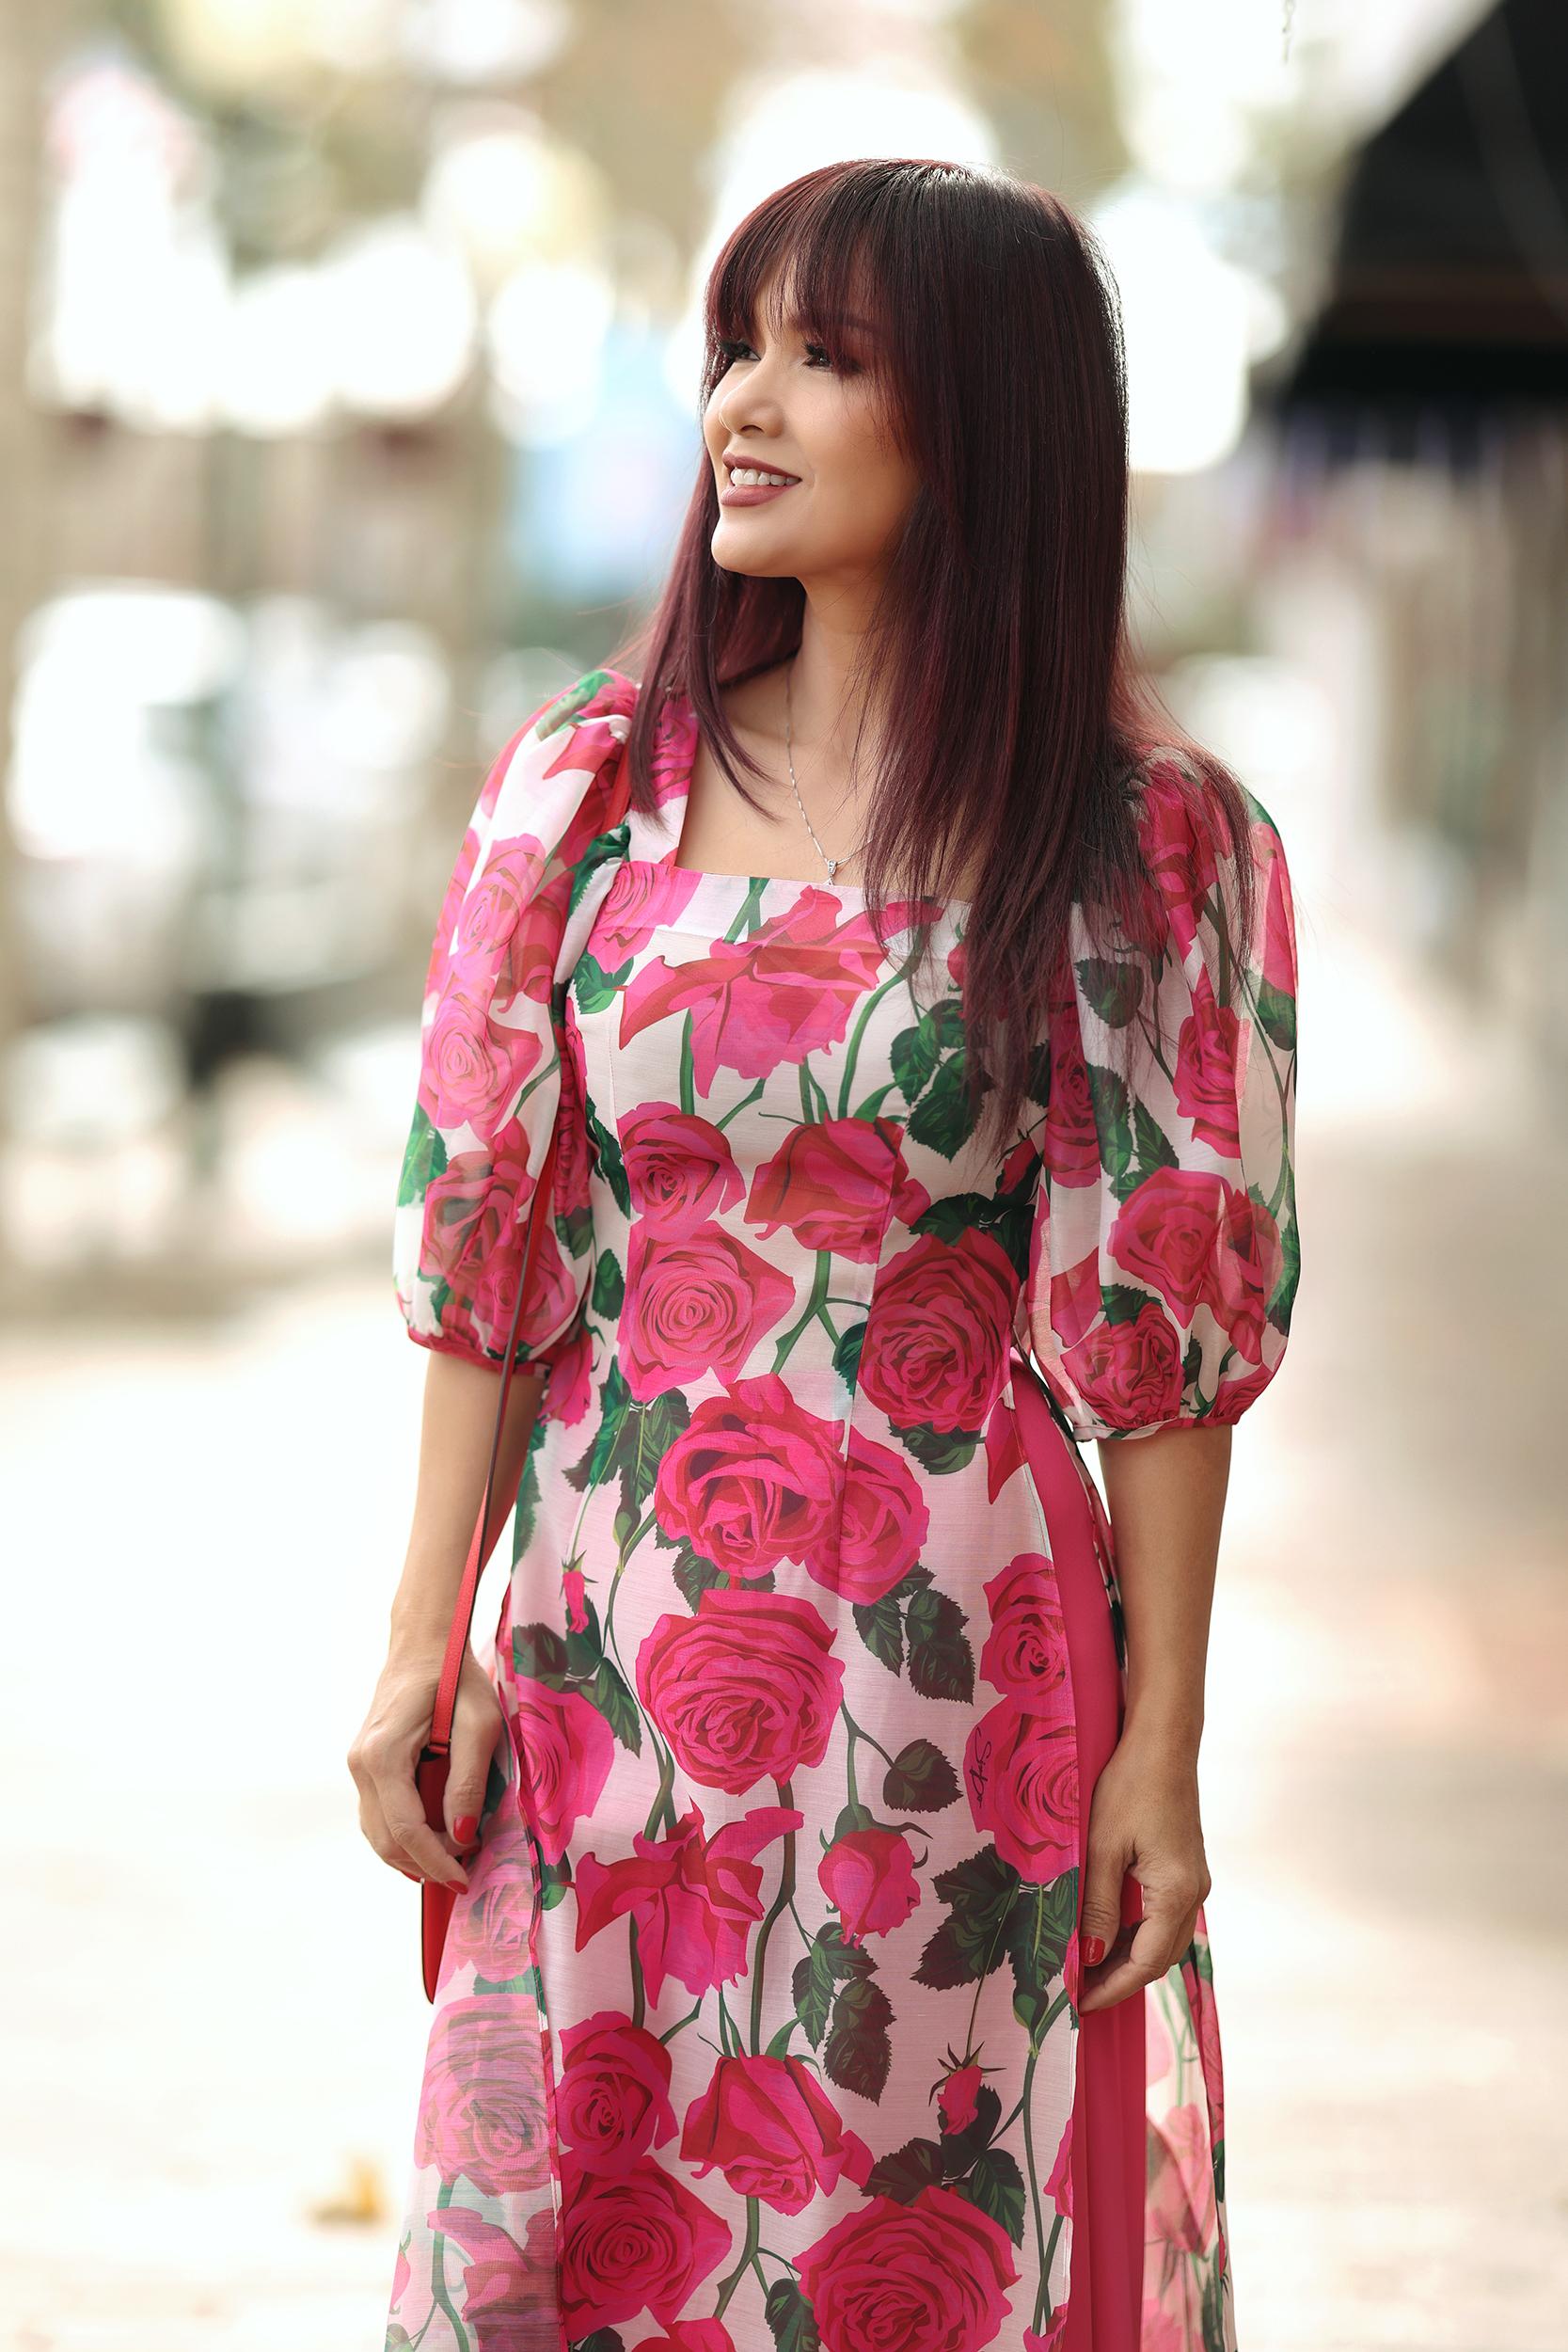 Áo dài hoa hồng là một trong những trang phục truyền thống của người Việt, tuy nhiên đây cũng là trang phục đầy phong cách và cá tính mà bạn không nên bỏ qua. Hãy để những bộ áo dài với hoa hồng thơm tho, tươi tắn đưa bạn đến với nét thanh lịch và quyến rũ của người phụ nữ Việt Nam.